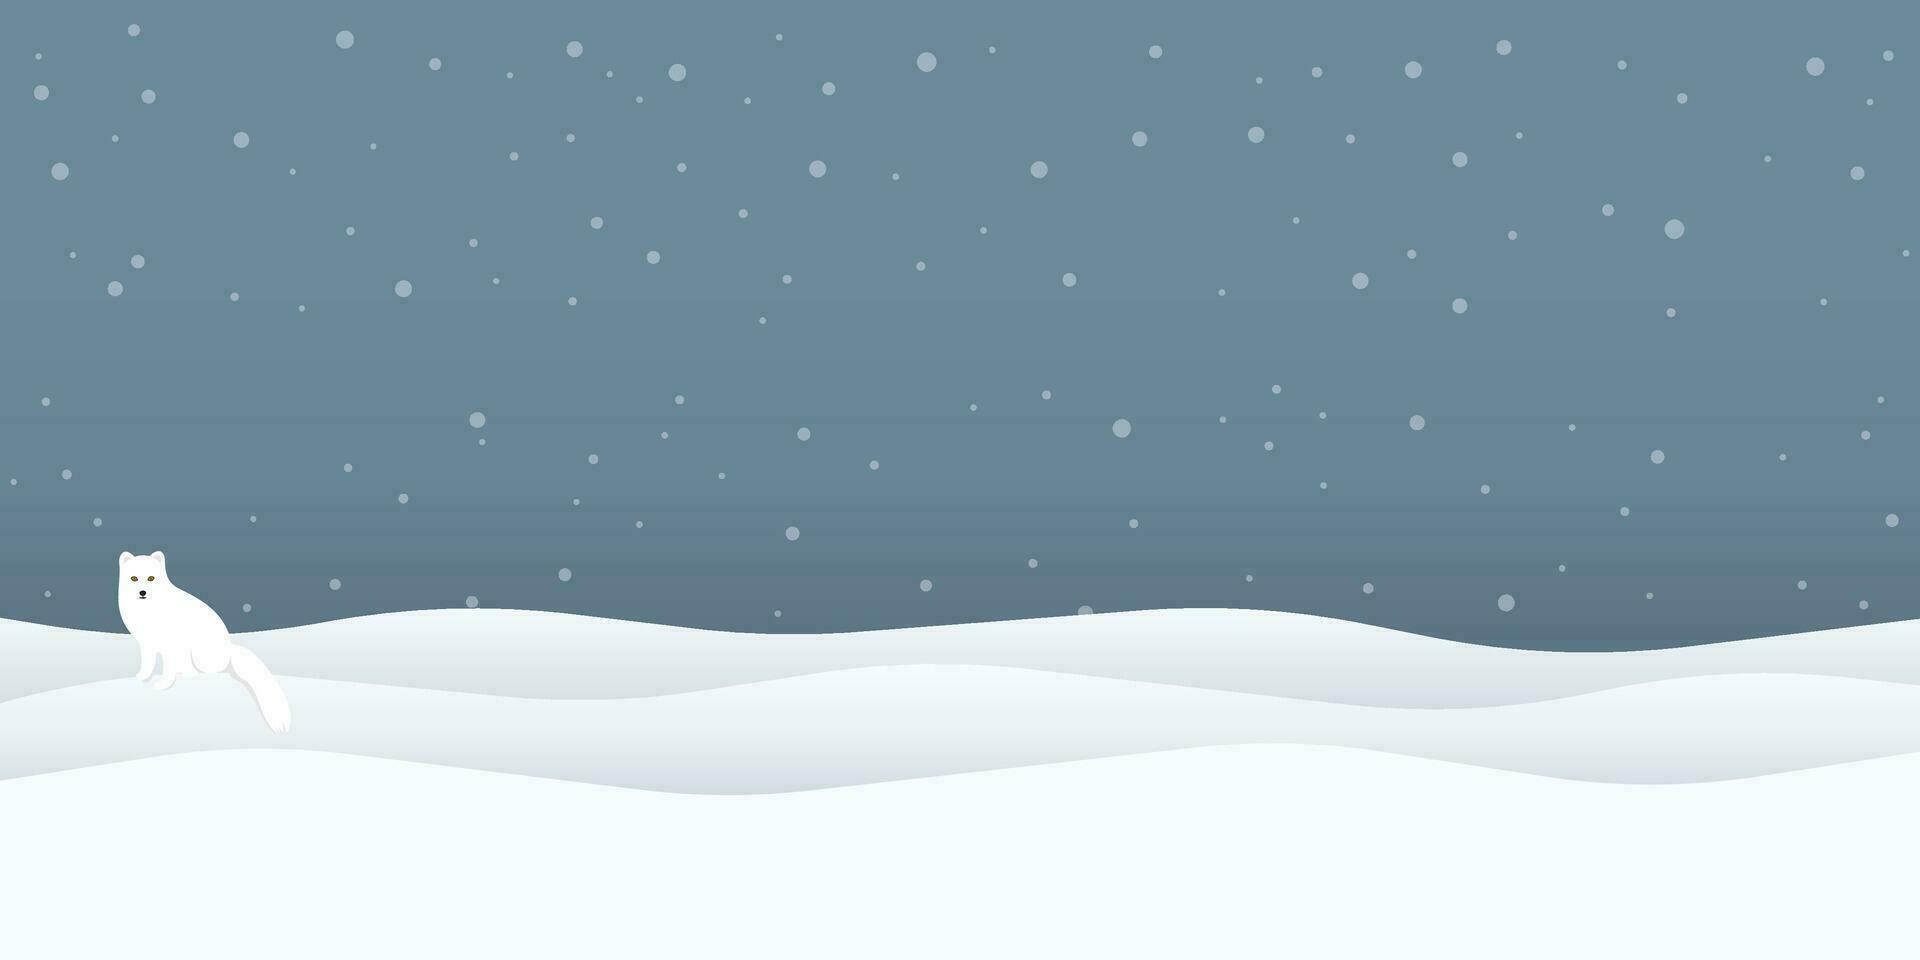 ártico zorro en tierra de nieve a noche vector ilustración. nieve paisaje concepto tener blanco espacio.